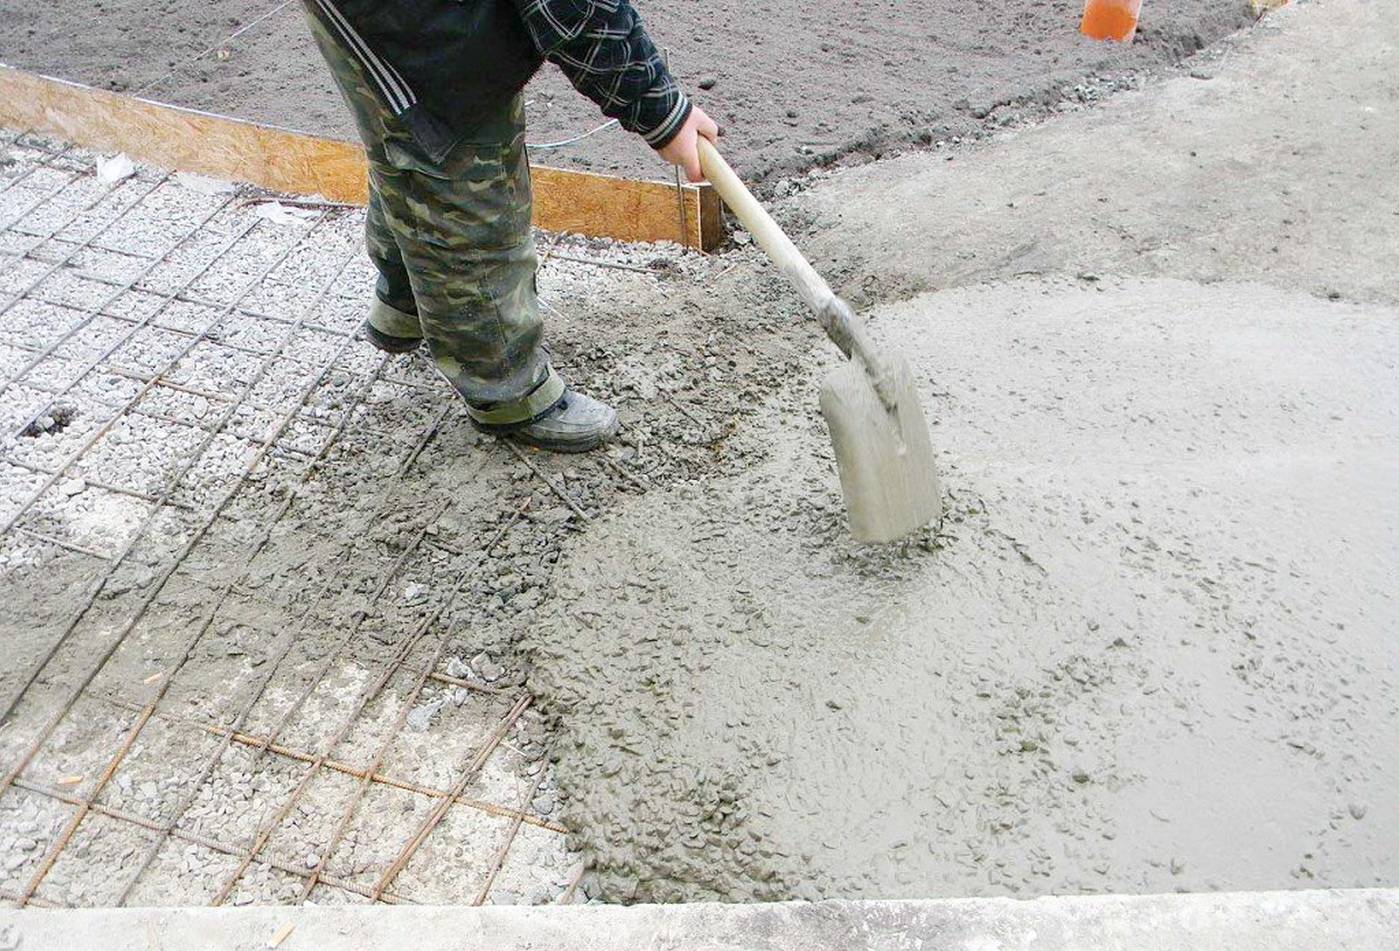 Защита бетона от разрушения на улице